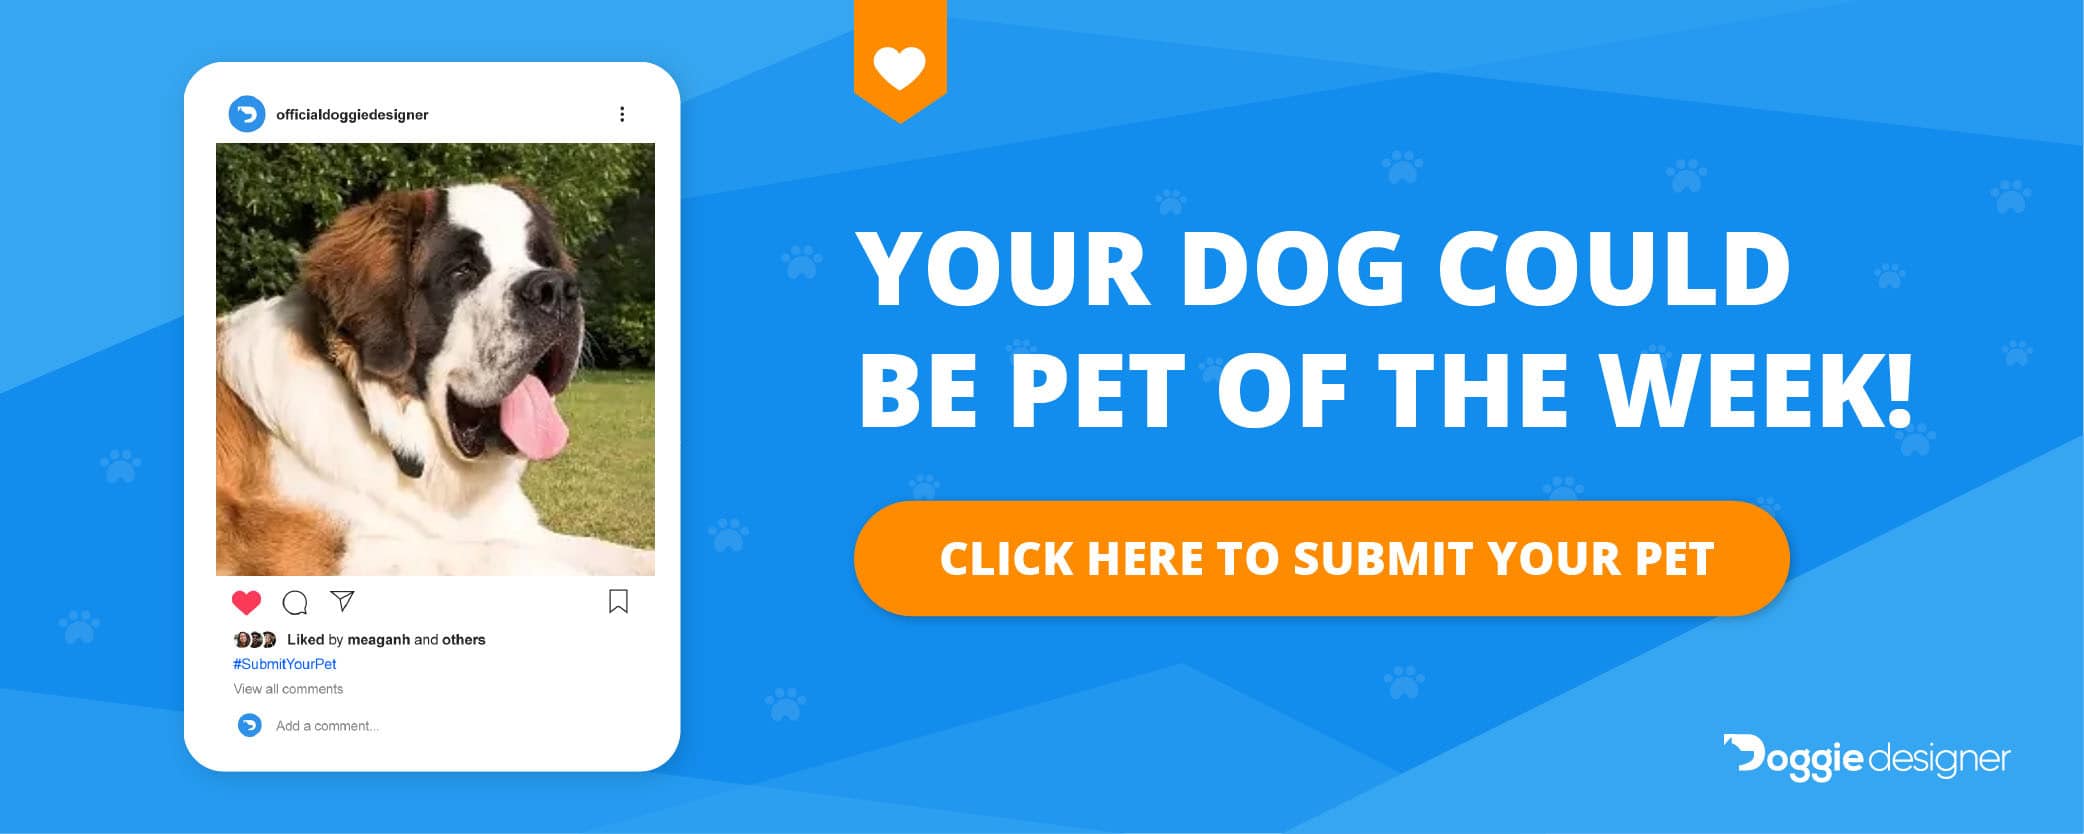 submit your pet saint bernard large dog